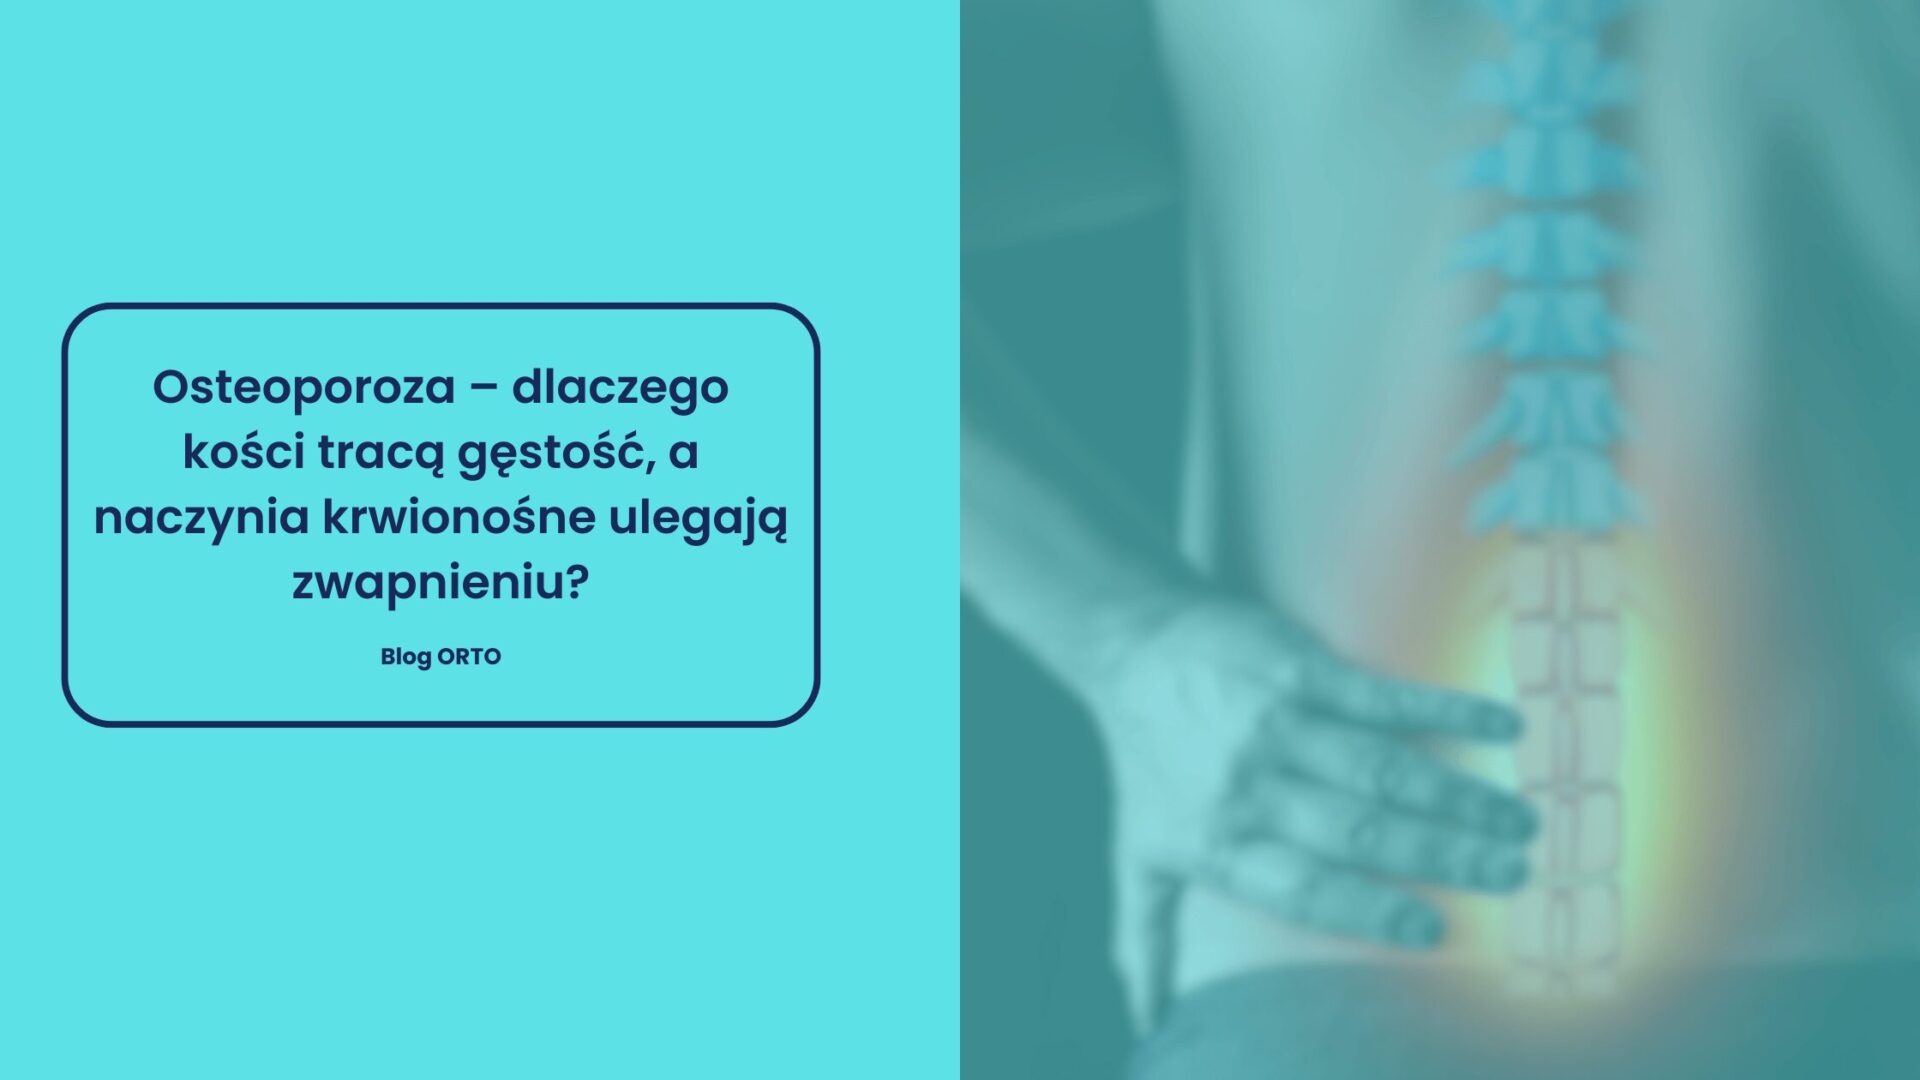 Osteoporoza – dlaczego kości tracą gęstość, a naczynia krwionośne ulegają zwapnieniu? - blog orto.pl